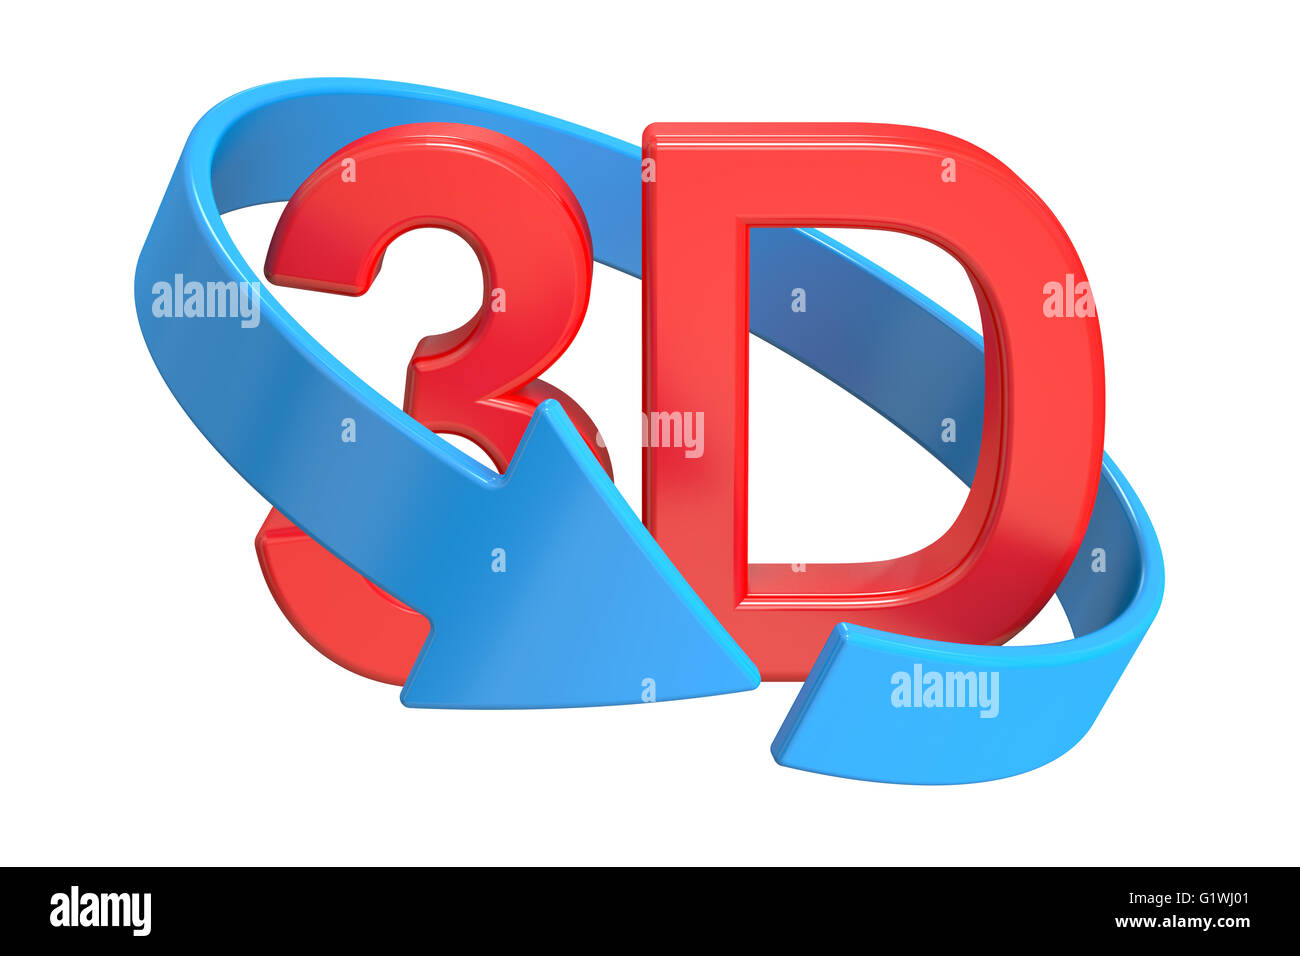 3D Virtual Tour-Konzept, 3D rendering isolierten auf weißen Hintergrund Stockfoto